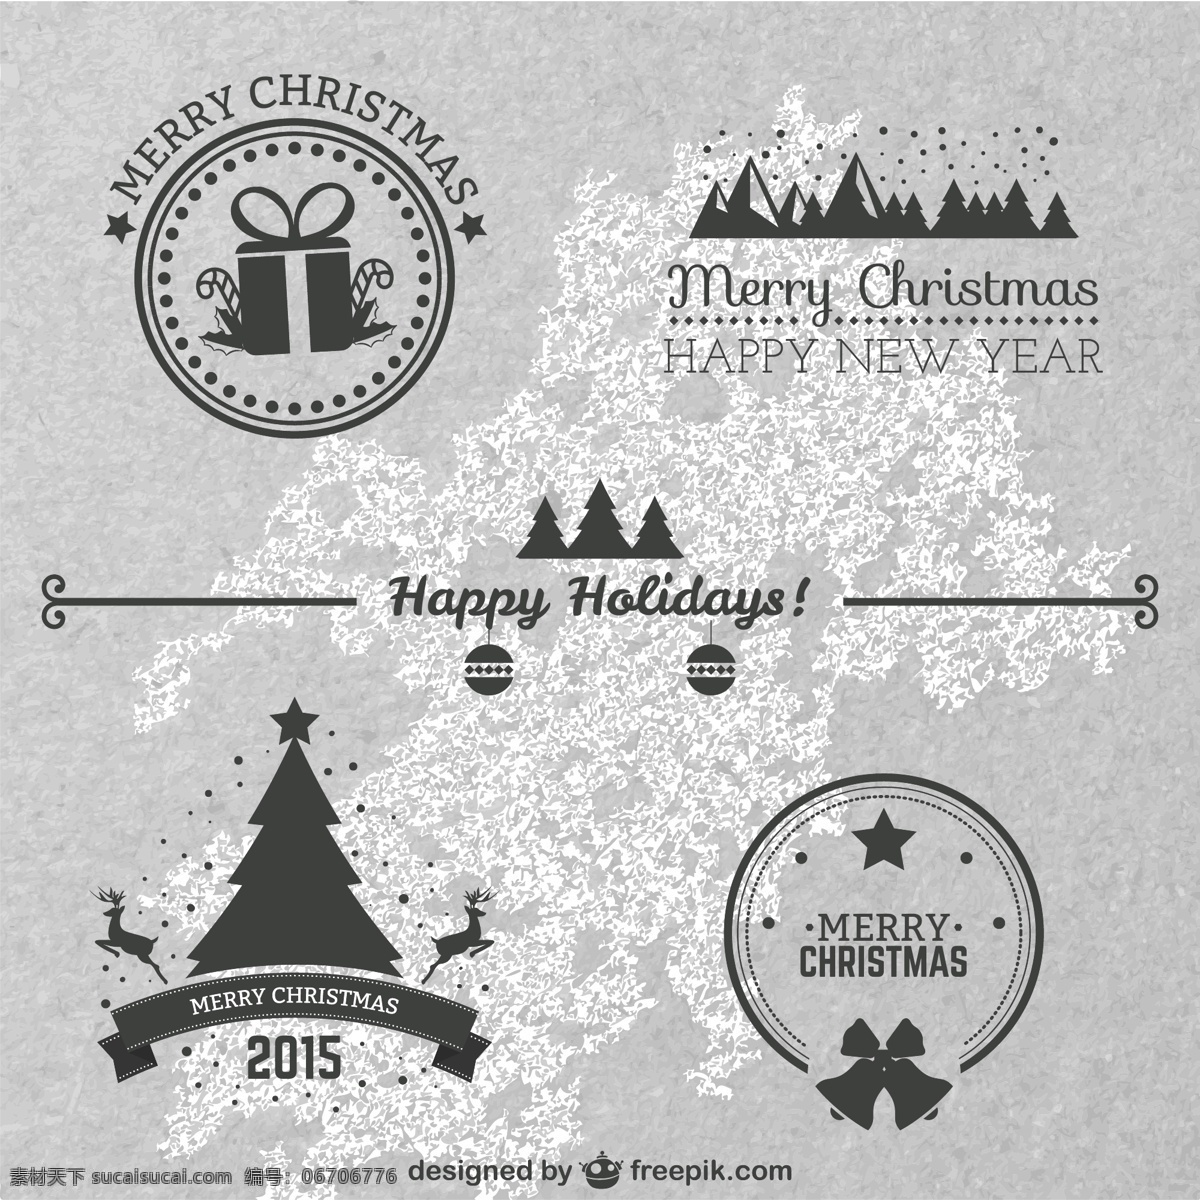 经典 款式 圣诞 徽章 圣诞节 新年快乐 2015 快乐 新 年 风格 圣诞礼物 灰色